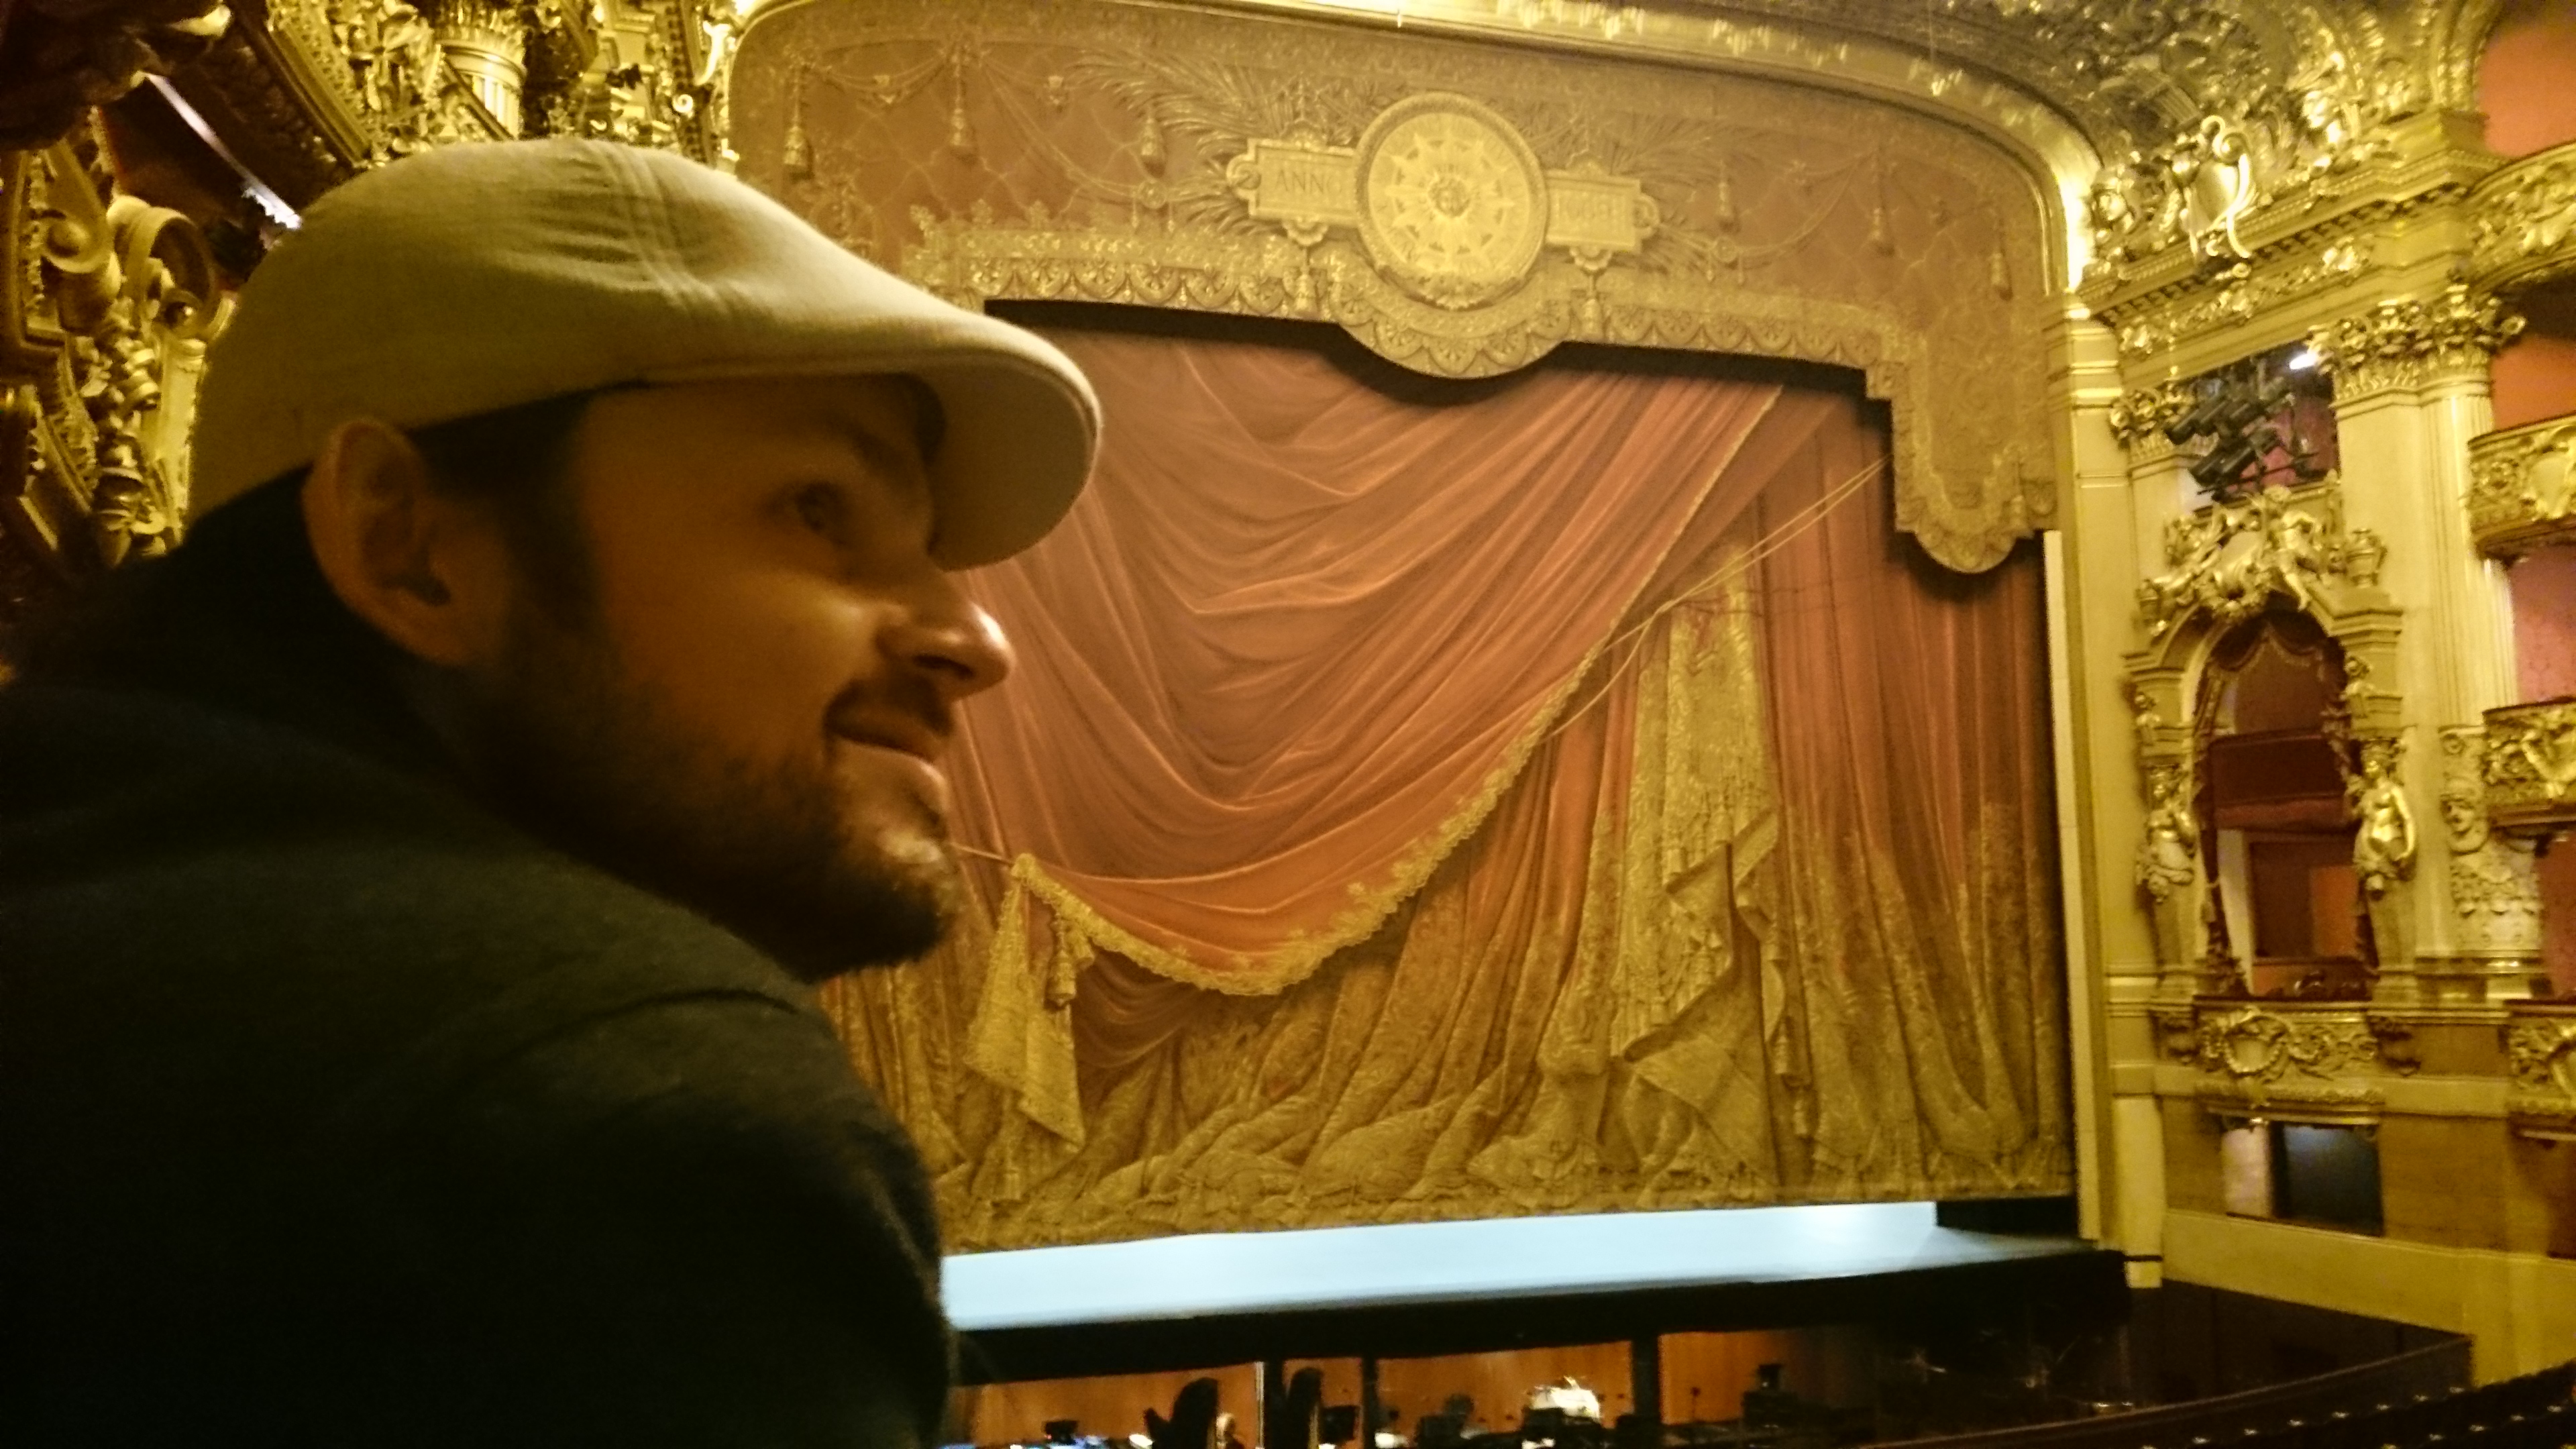 dsc 1032 - Una visita a la Opera de Paris (Palais Garnier)